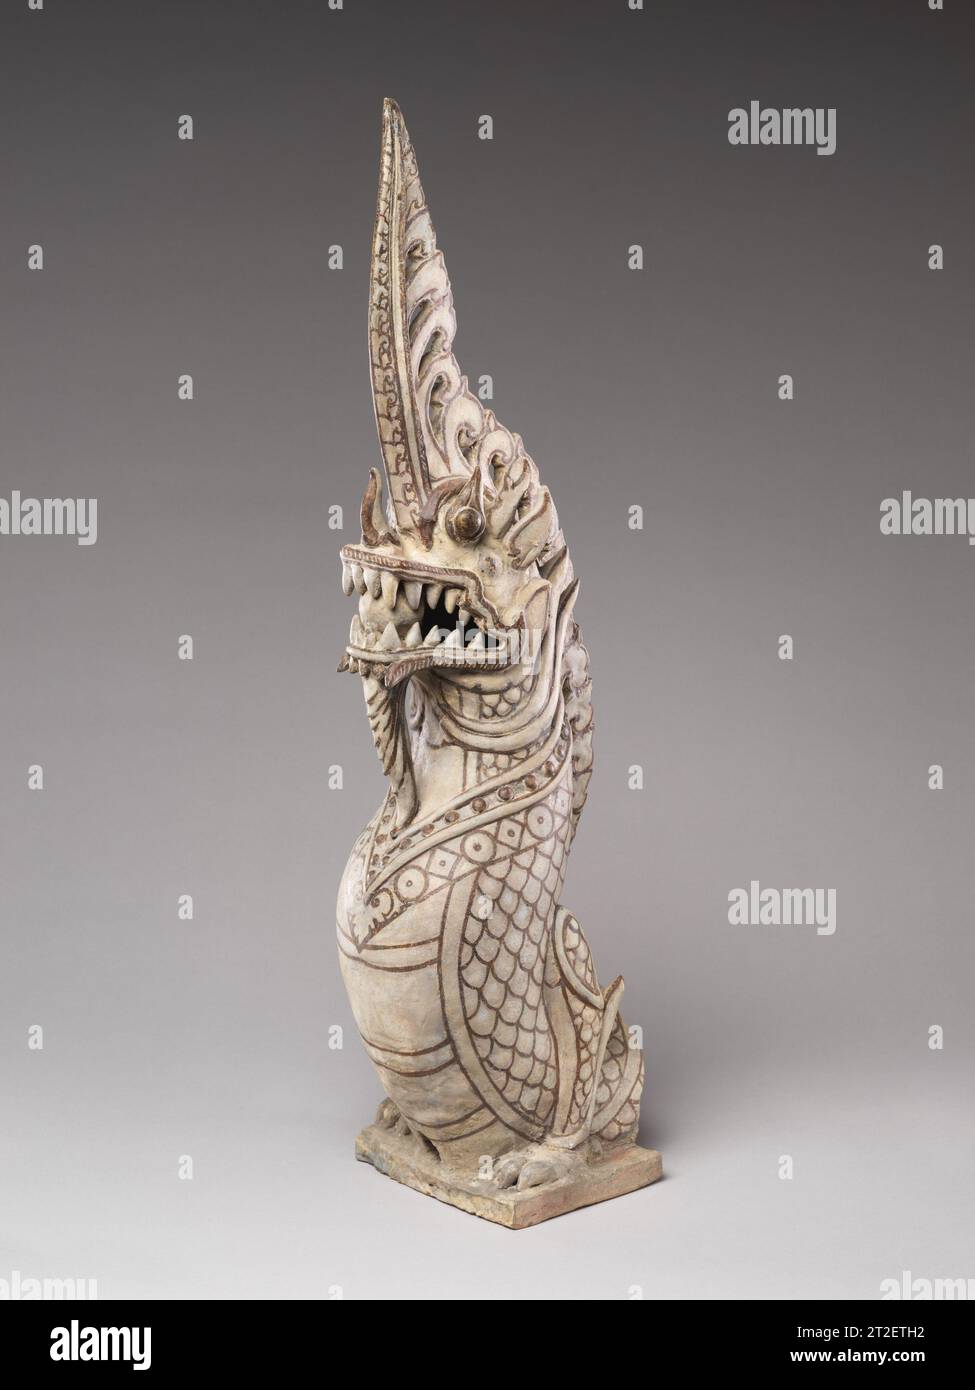 Antefix architectural en forme de funial makara Nord-central Thaïlande, Sukhothai fours fin 14e-15e siècle ce funial architectural pour un temple a pris la forme d'une créature mythique dragon, clairement dérivée du makara indic mais avec de forts éléments indigènes, comme l'importance accordée au corps ressemblant à un serpent plutôt qu'à celui du crocodile plus traditionnel. Ici, le dragon barbu semble émerger des mâchoires d'un makara, représenté à la base du funial. Le bâtiment du temple à Sukhothai était à la fois en latérite et en briques cuites, rendu avec un épais habillage de stuc an Banque D'Images